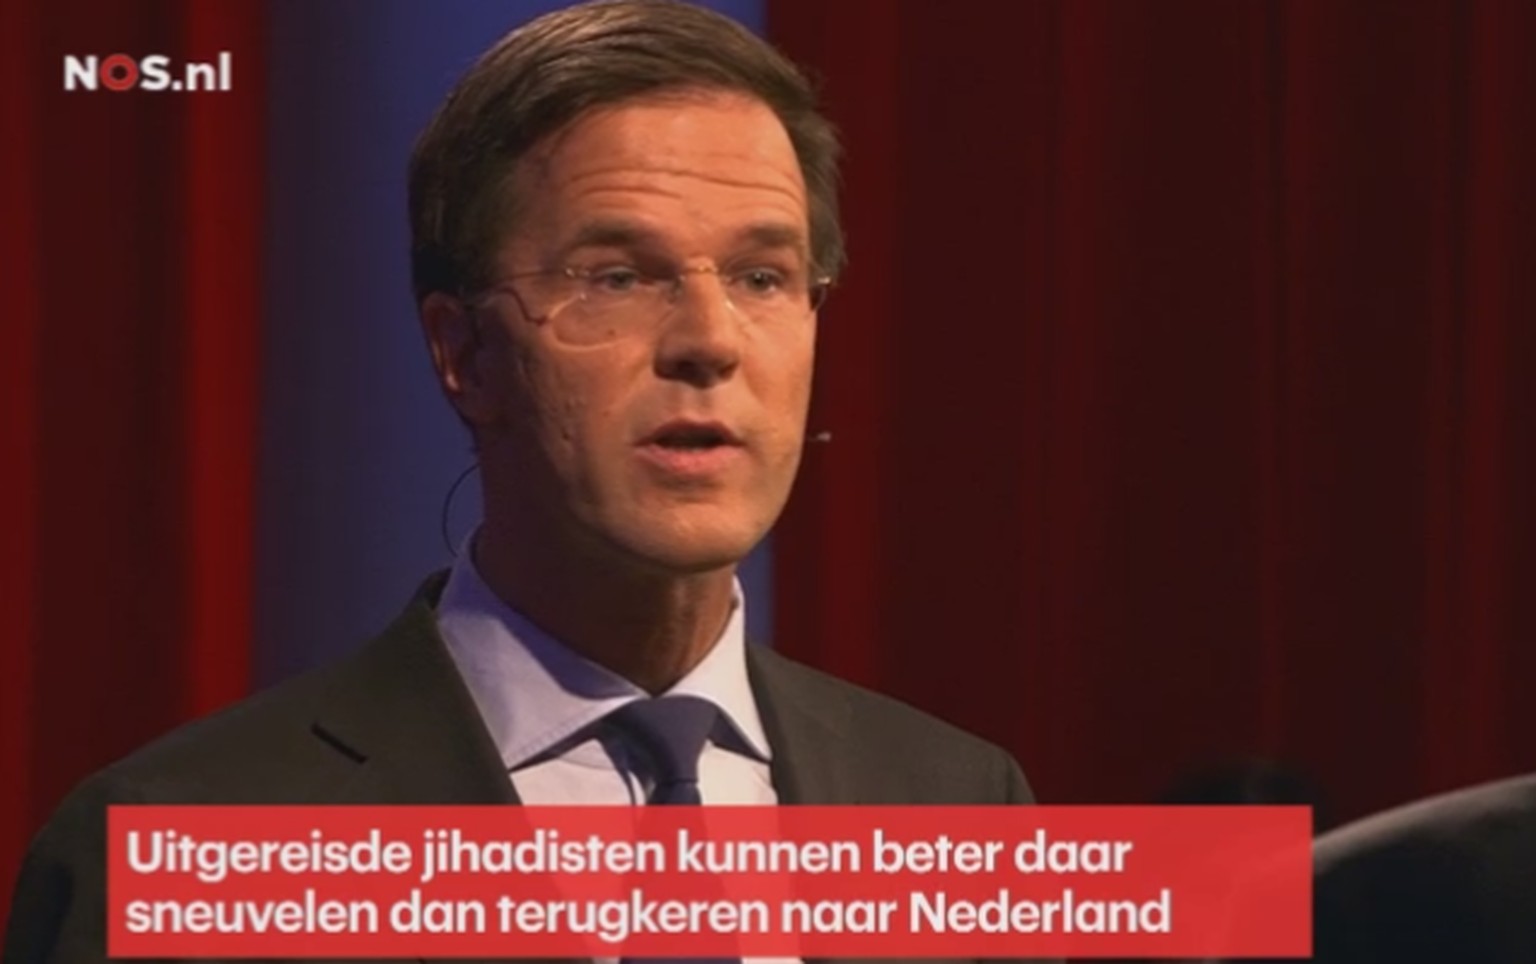 Der holländische Regierungschef Mark Rutte in der TV-Debatte.